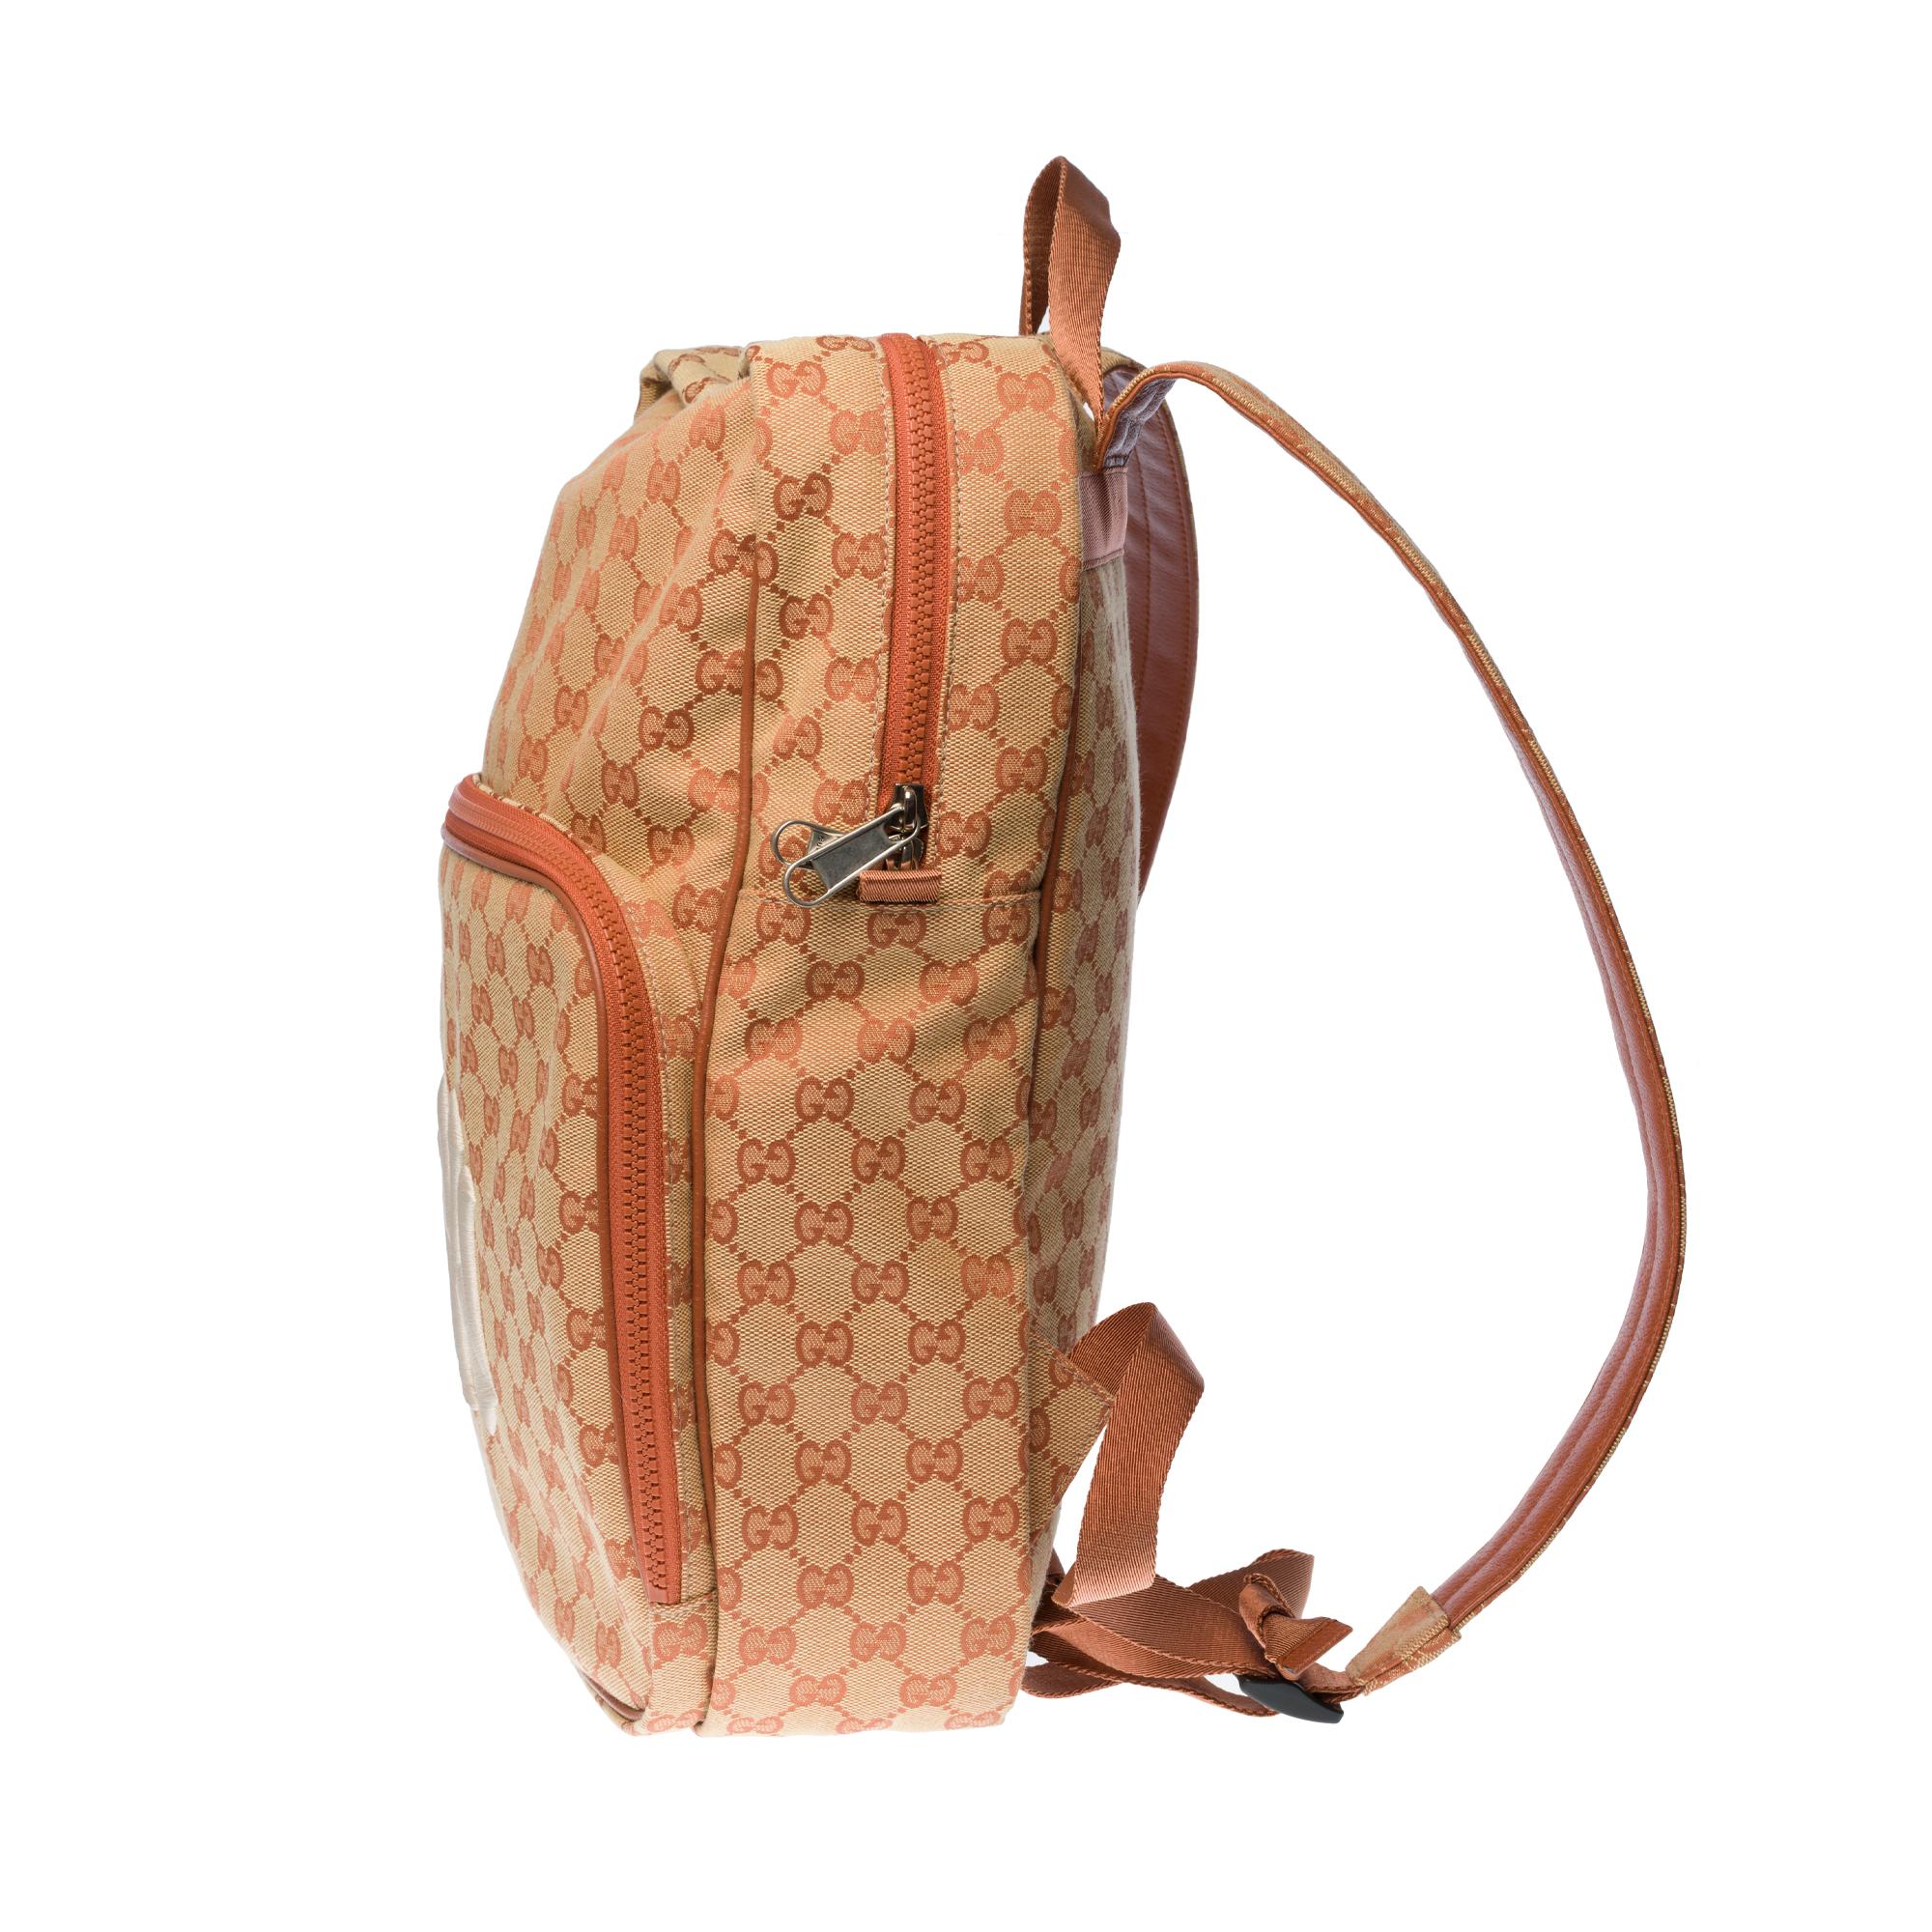 gucci yankees backpack